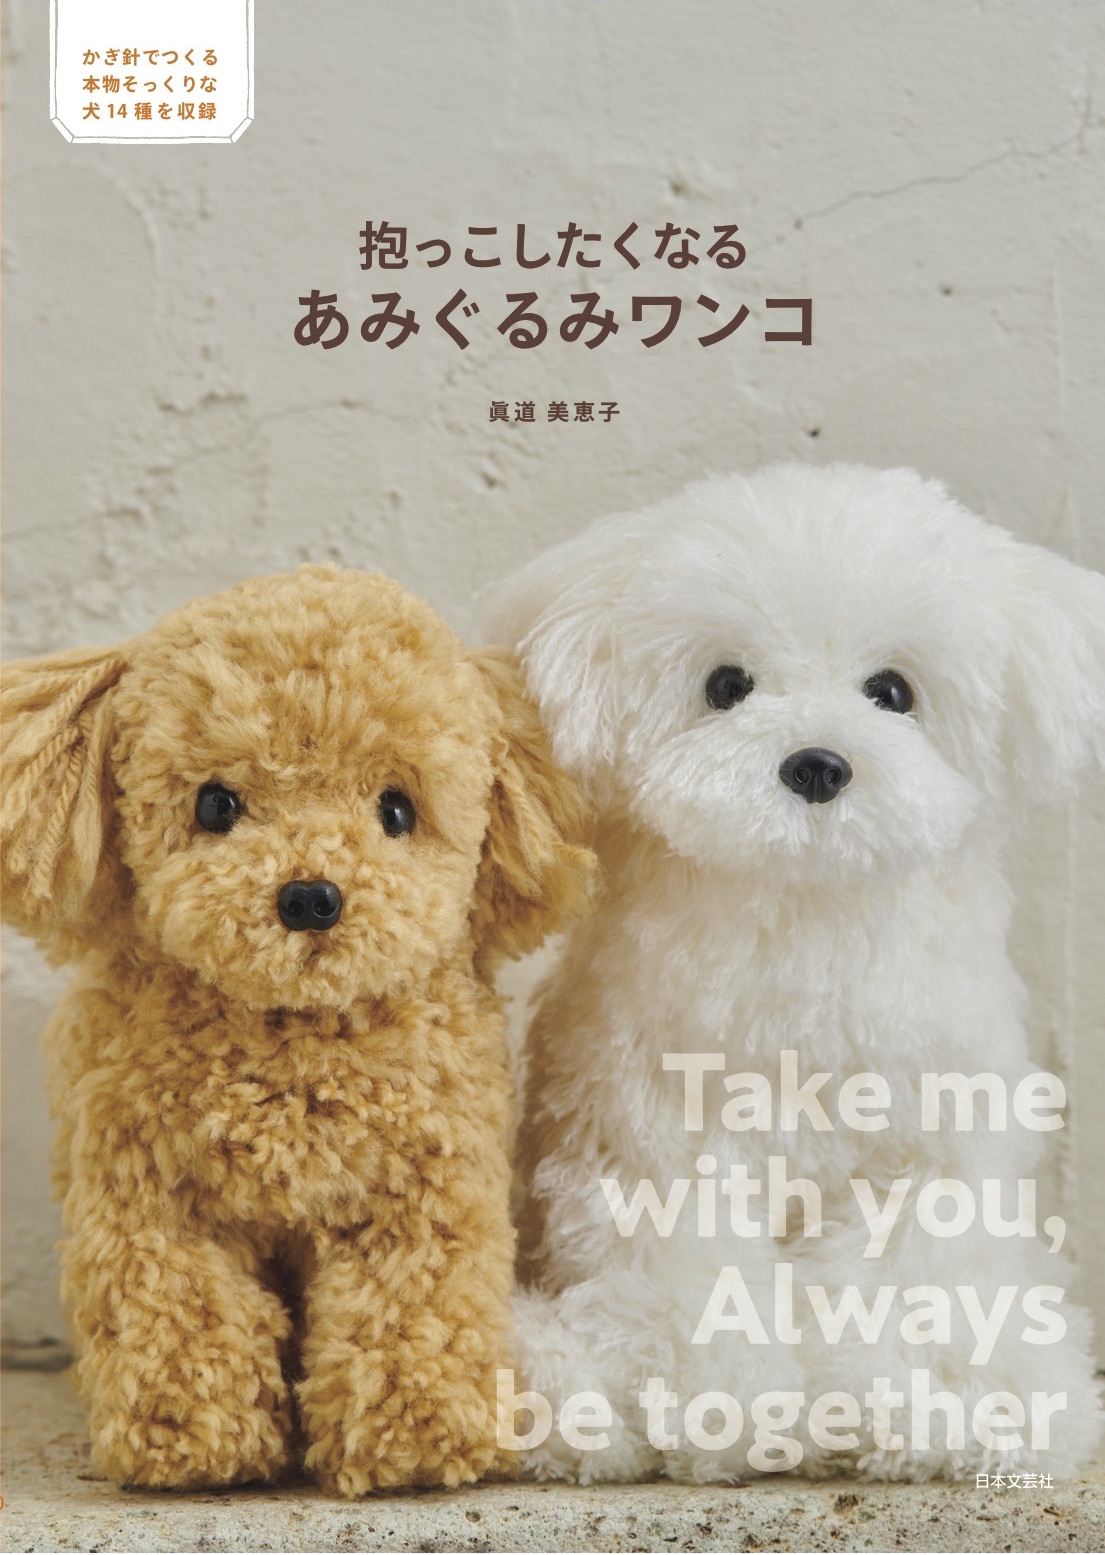 本物そっくりな可愛らしさ 抱っこしたくなる あみぐるみワンコ 12月16日発売 株式会社日本文芸社のプレスリリース